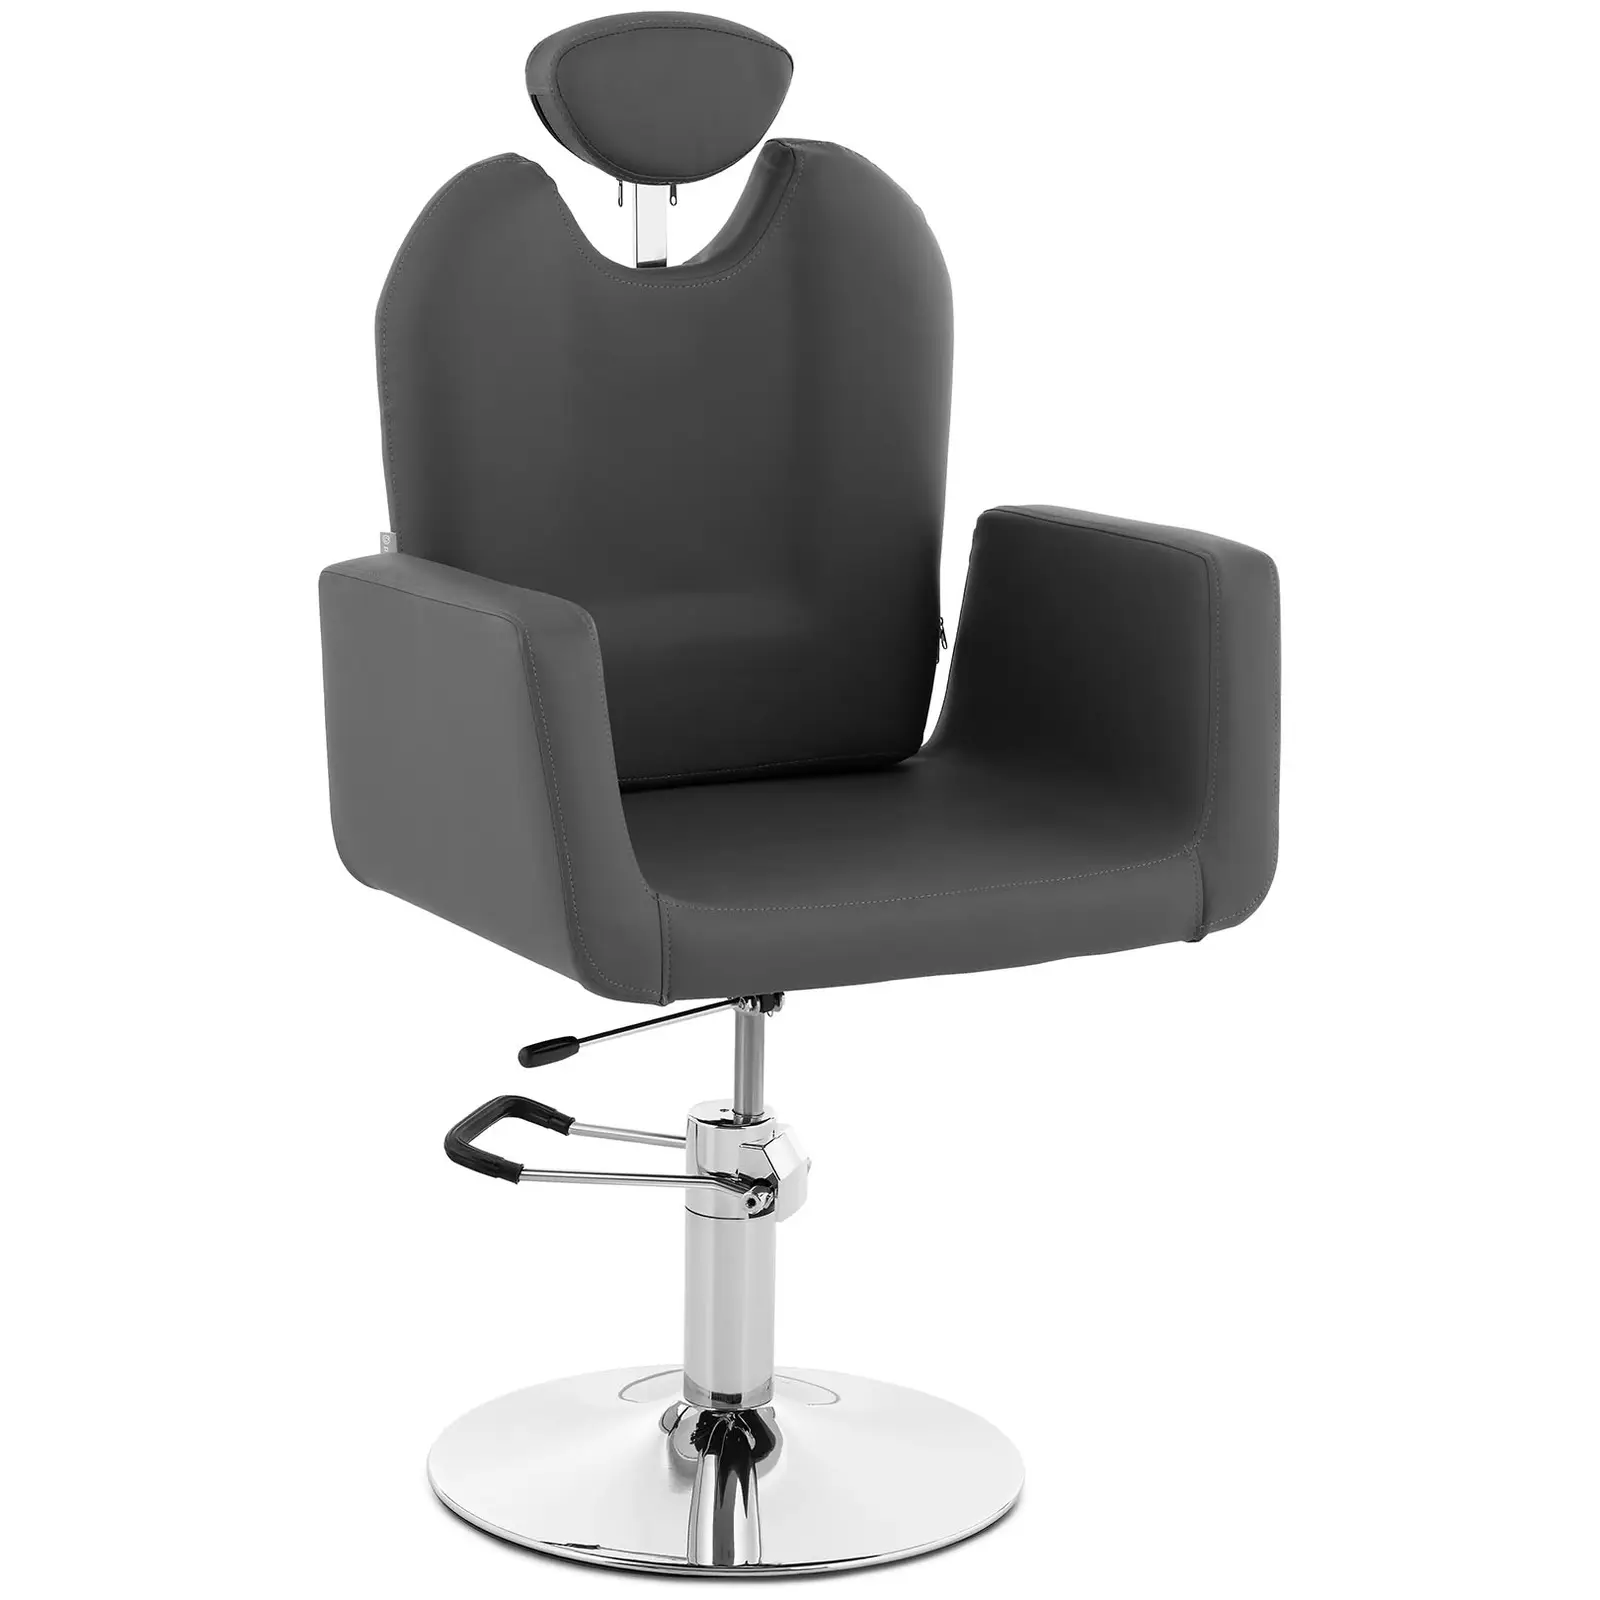 Salon Chair - 510 - 650 mm - 150 kg - Grey